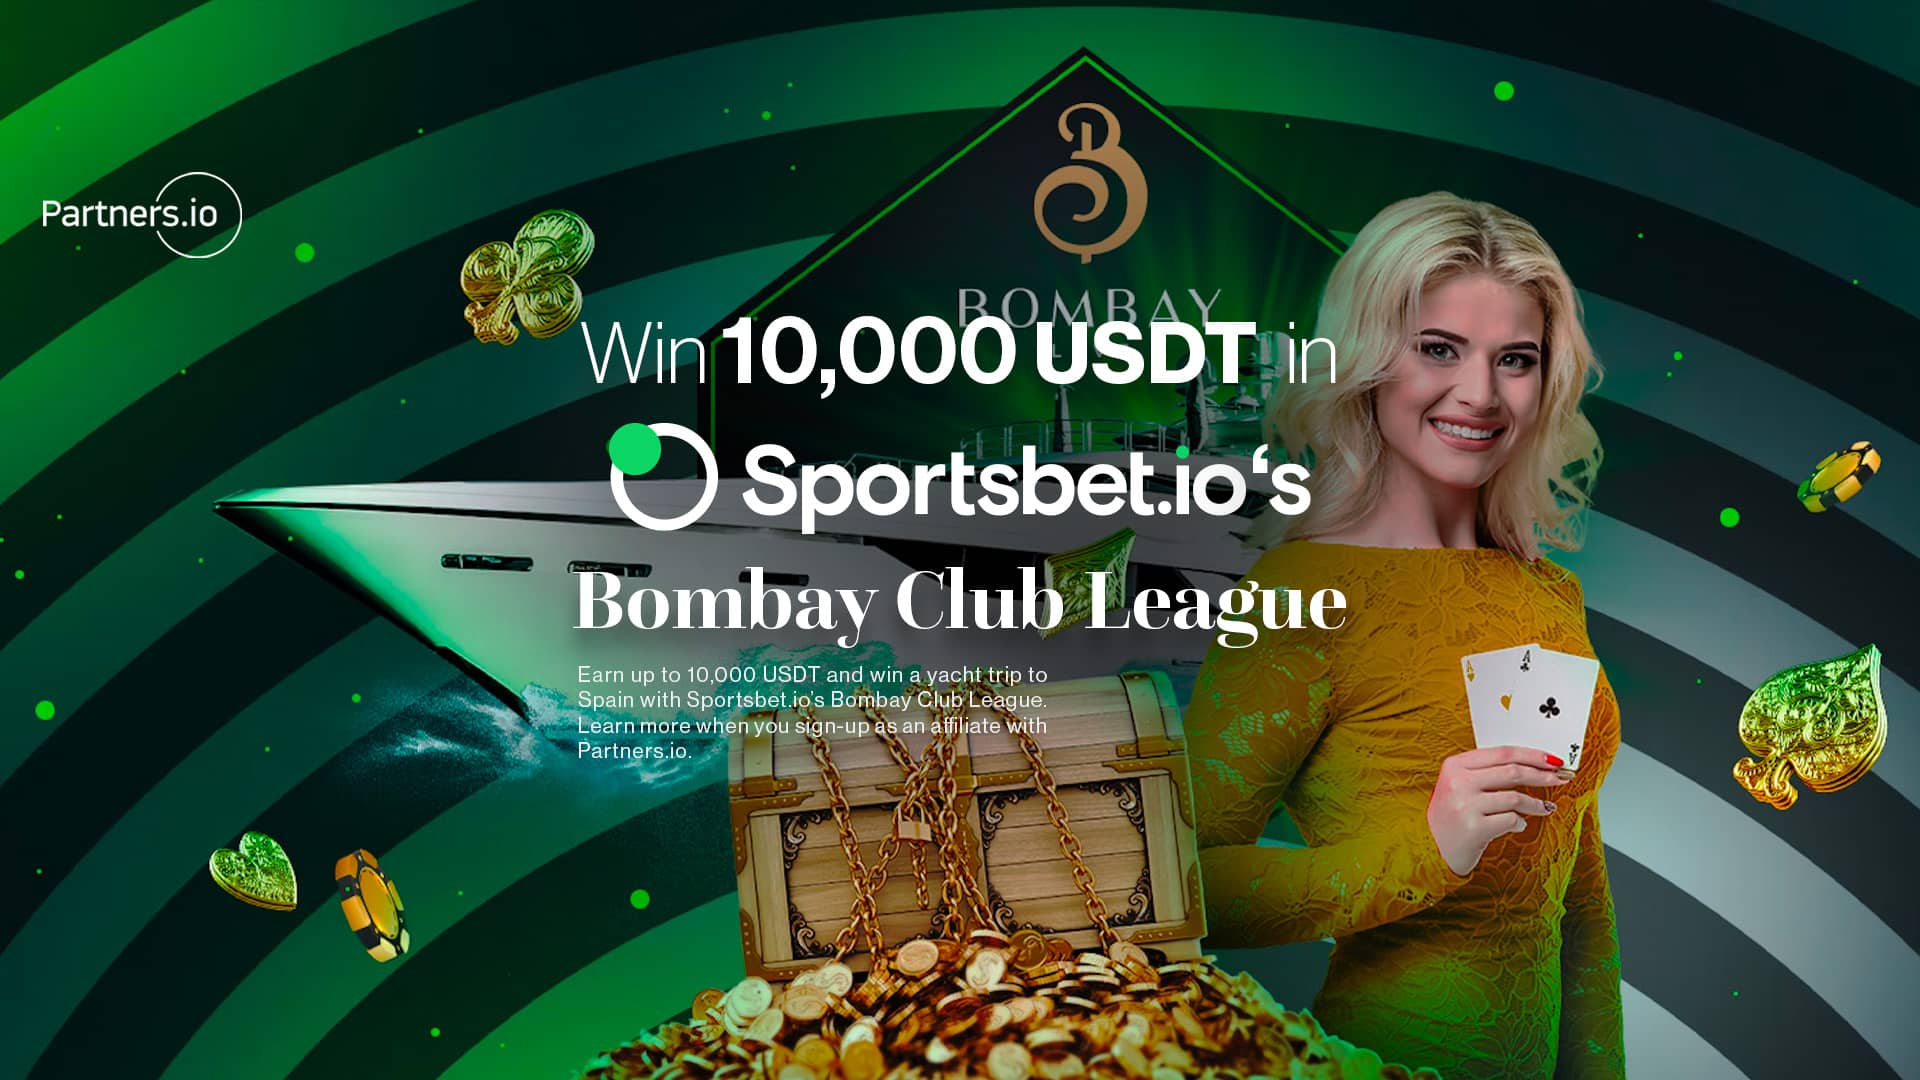 Win 10,000 USDT in Sportsbet.io’s Bombay Club League